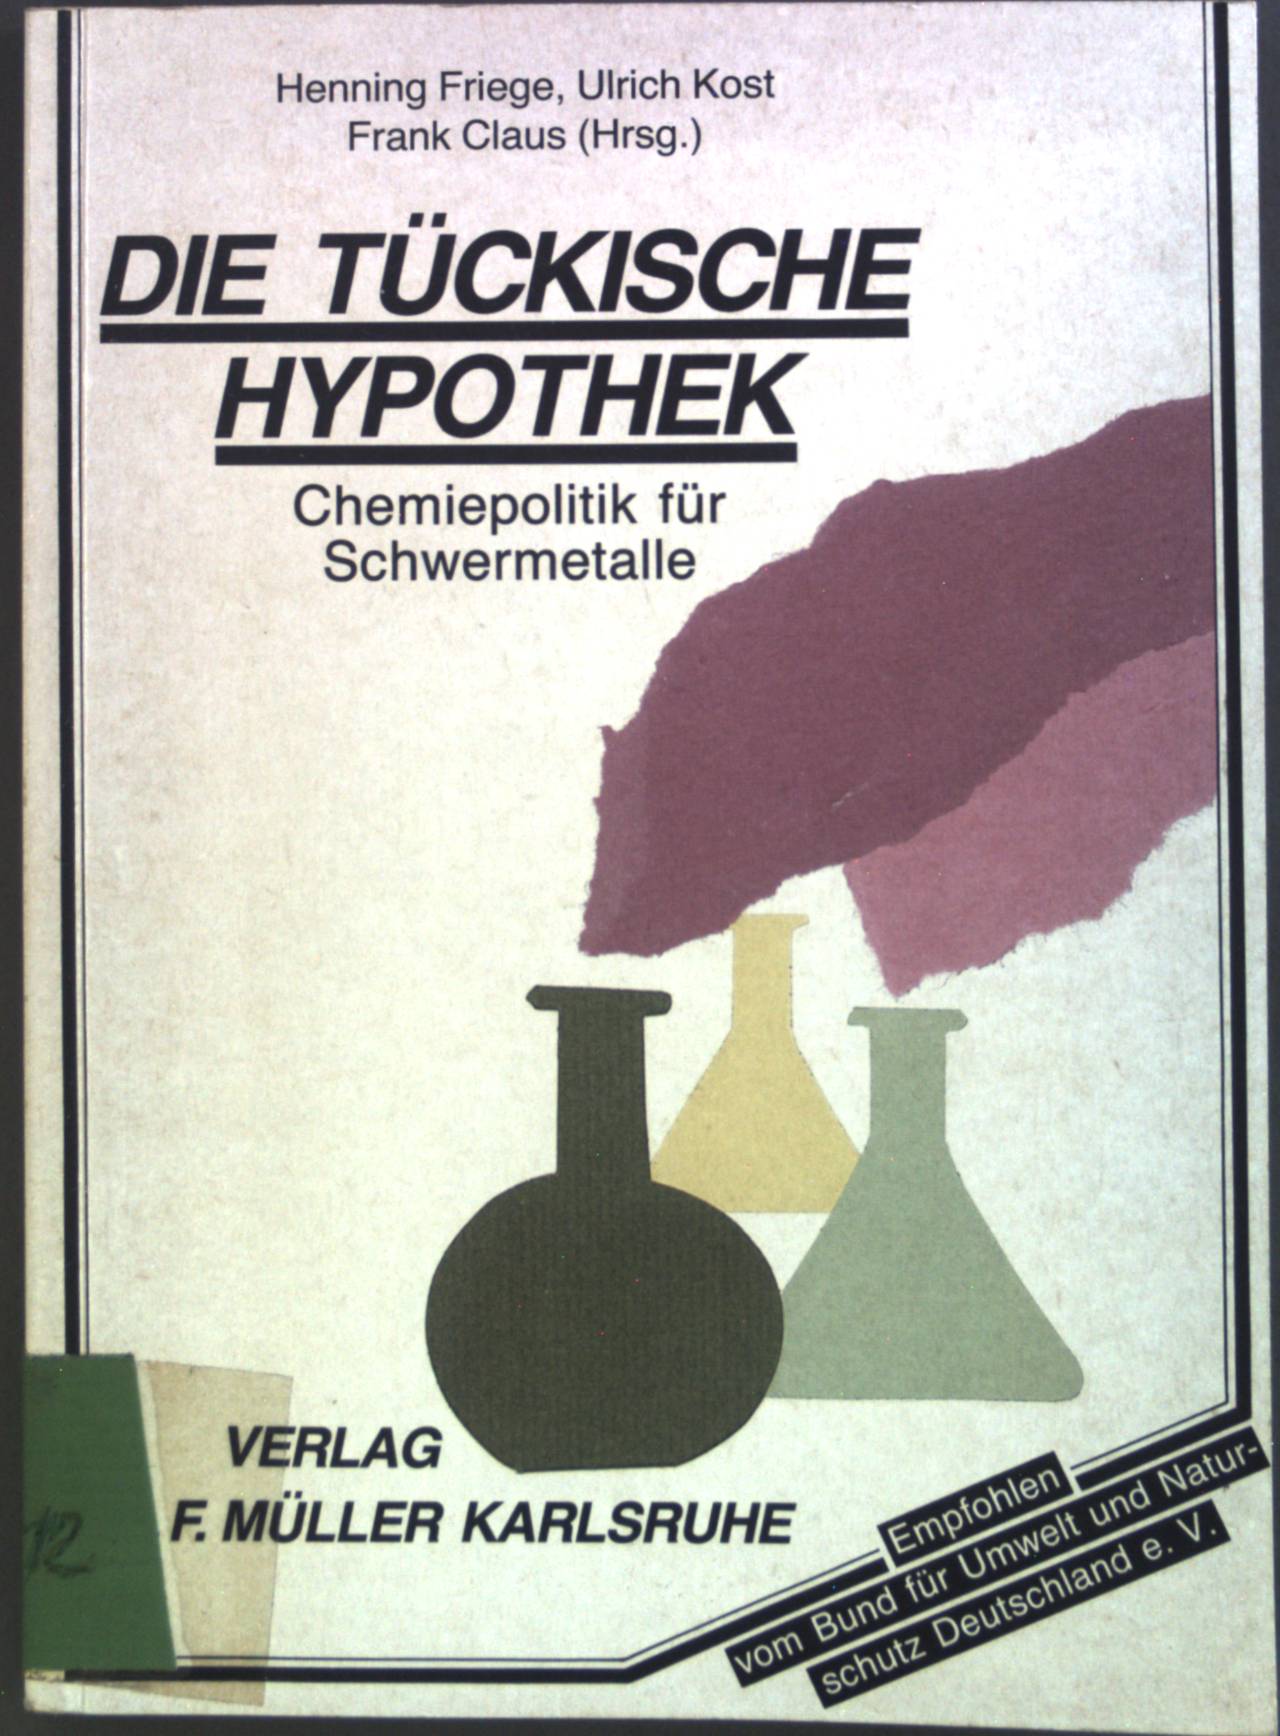 Die tückische Hypothek : Chemiepolitik für Schwermetalle. - Friege, Henning, Ulrich Kost Frank Claus u. a.